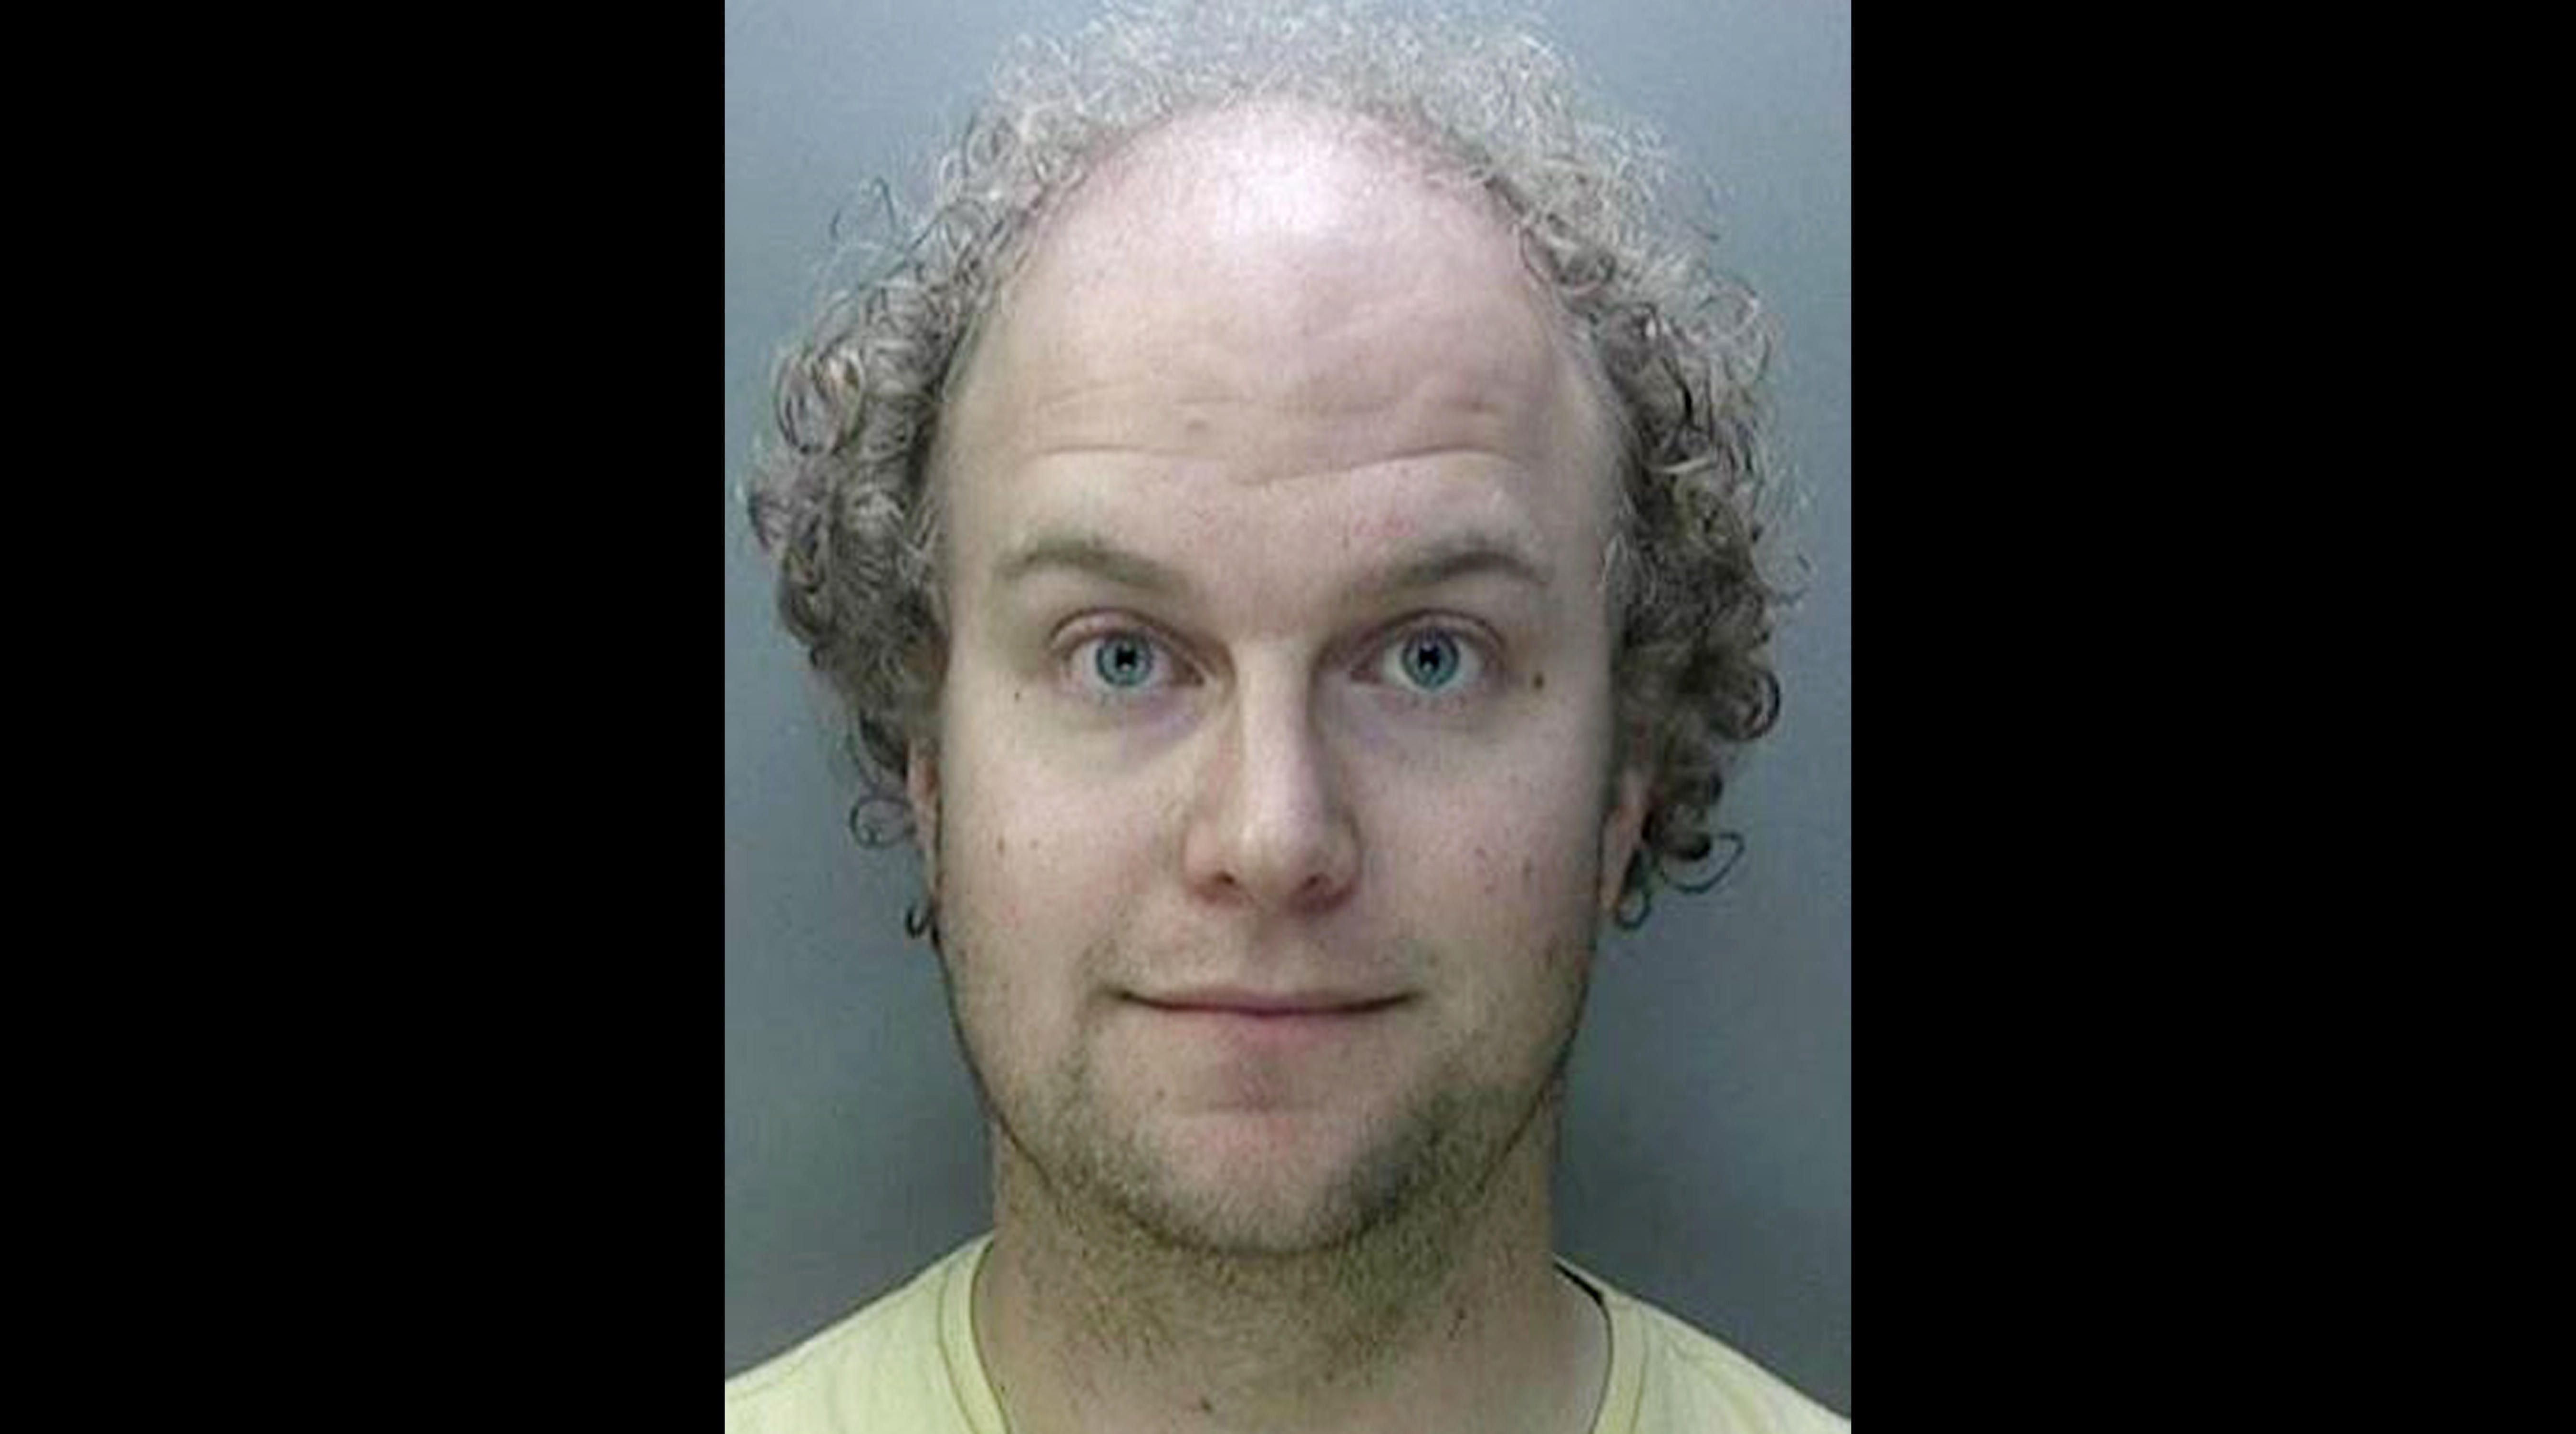 Britain pedophile Matthew Falder gets prison sentence for cruel